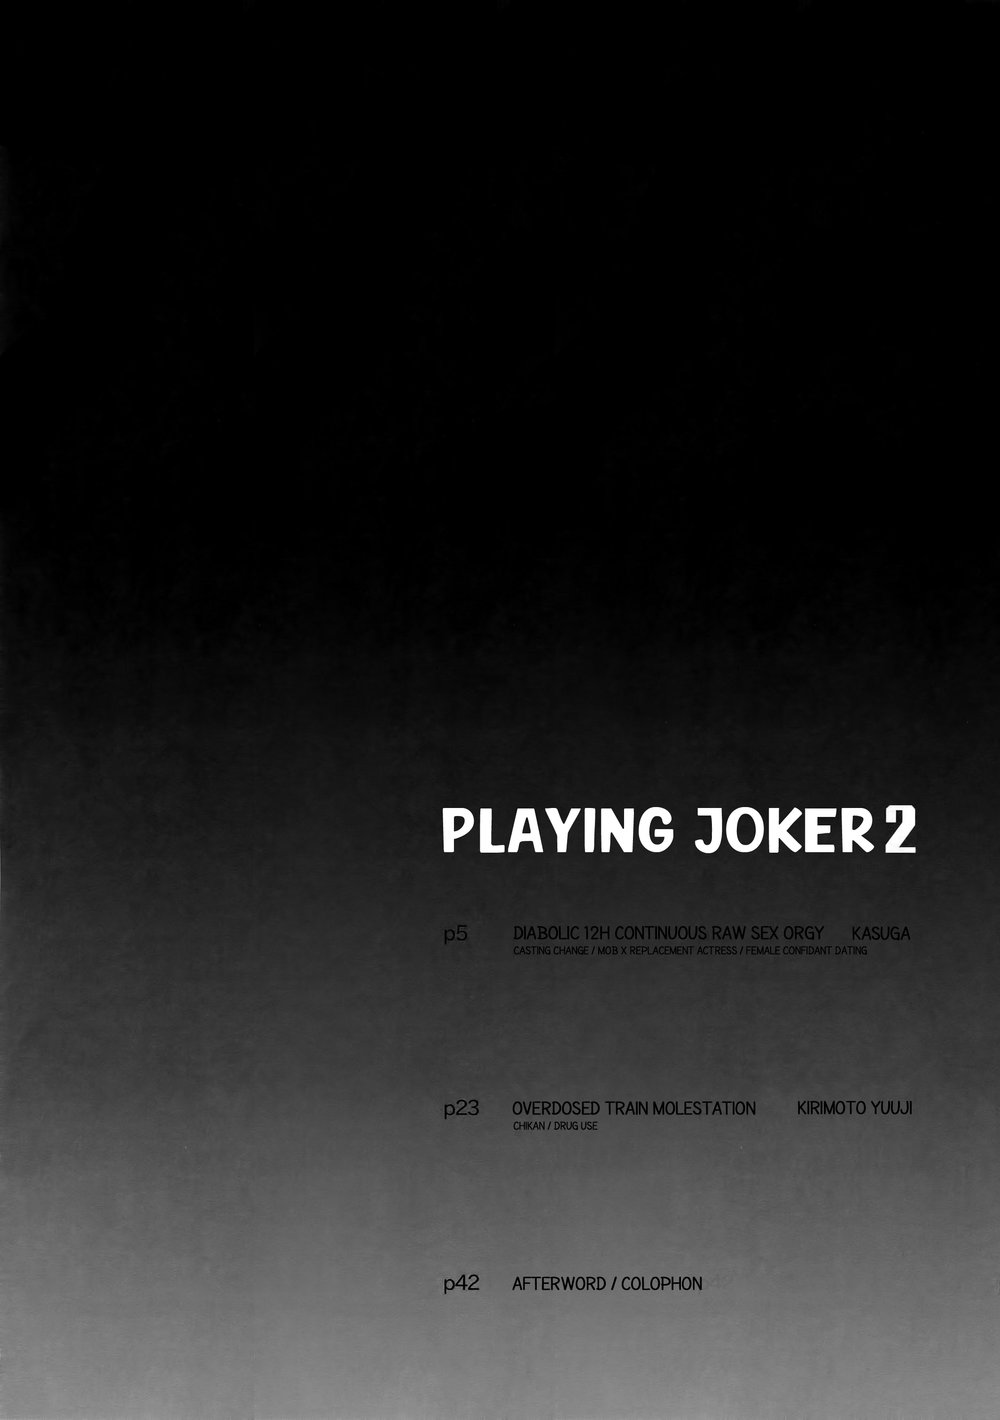 PLAYING JOKER 2